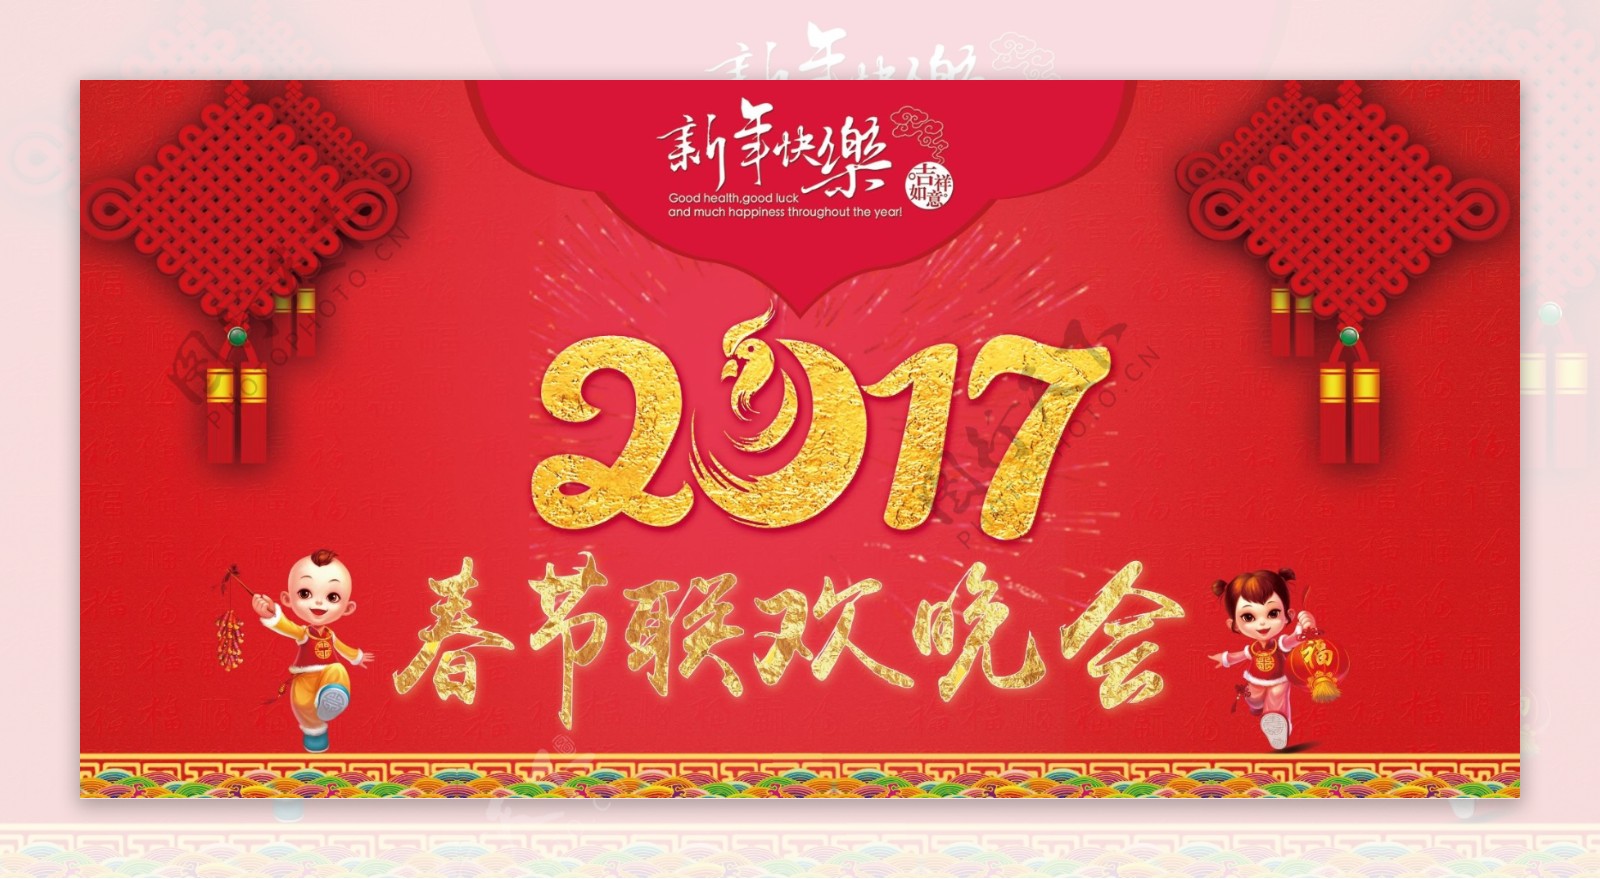 2017鸡年春节联欢晚会海报